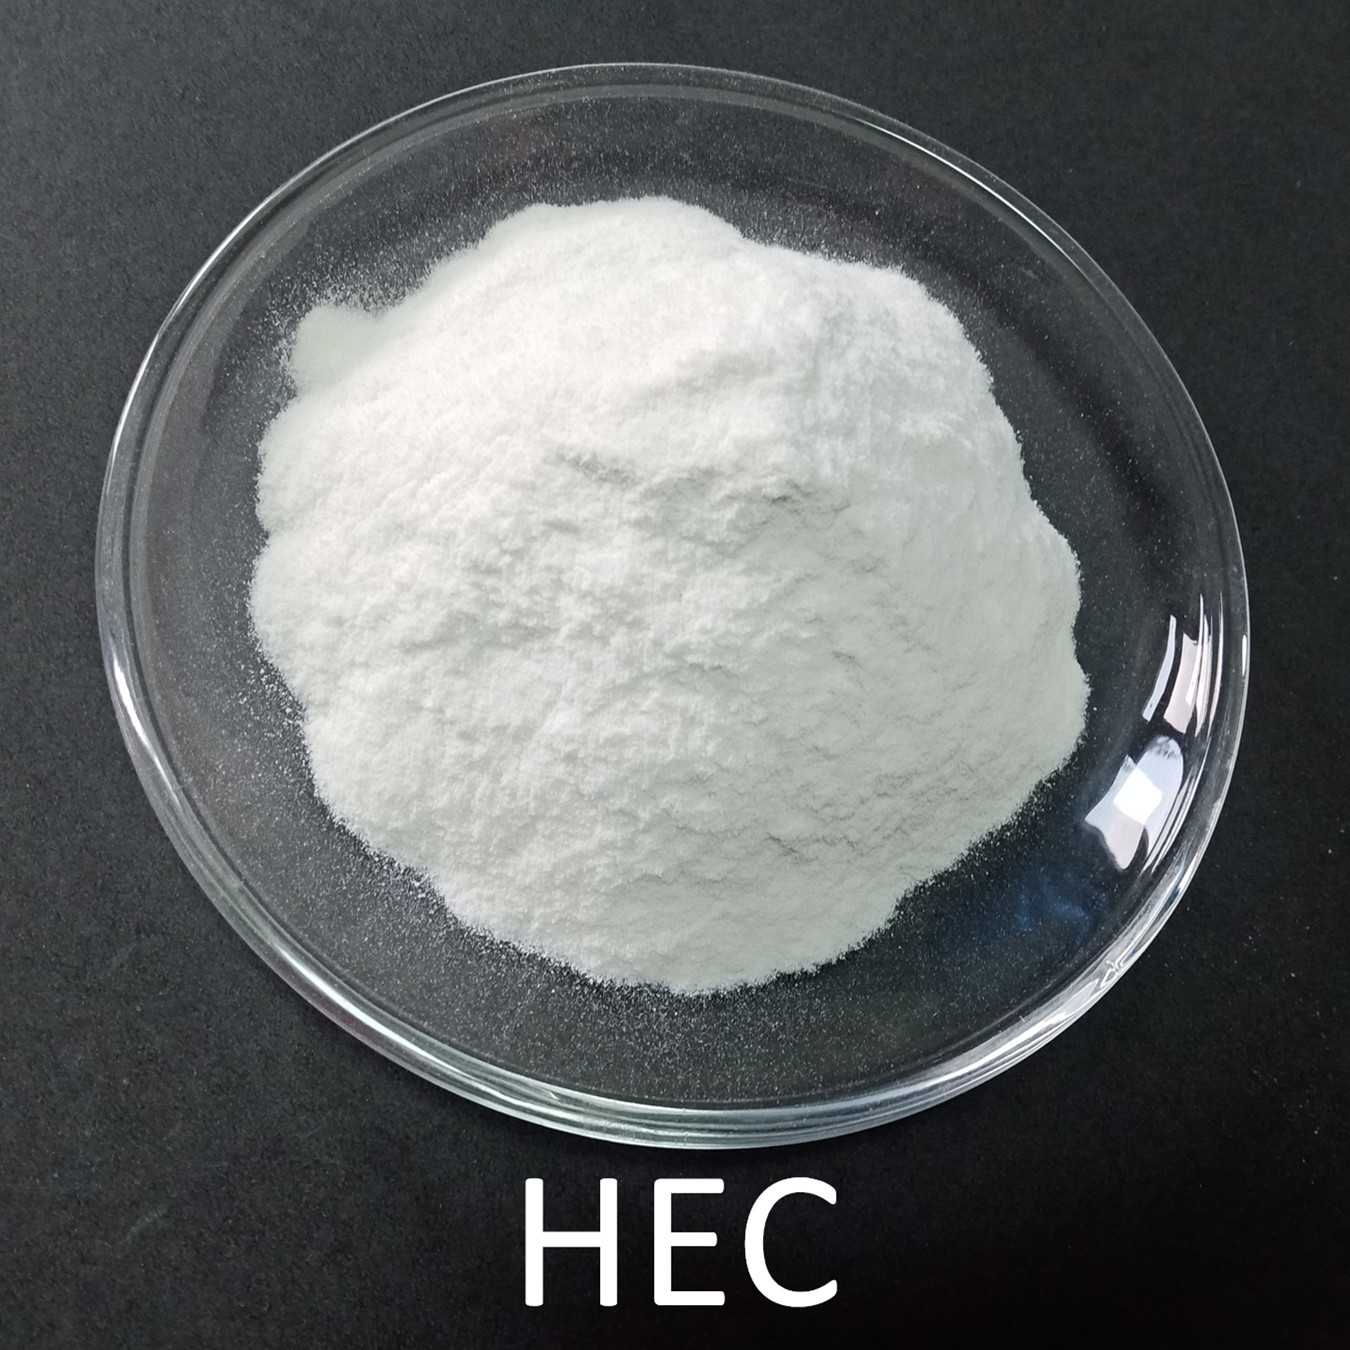 Predstavljena slika dobaviteljev HEC hidroksietil celuloze